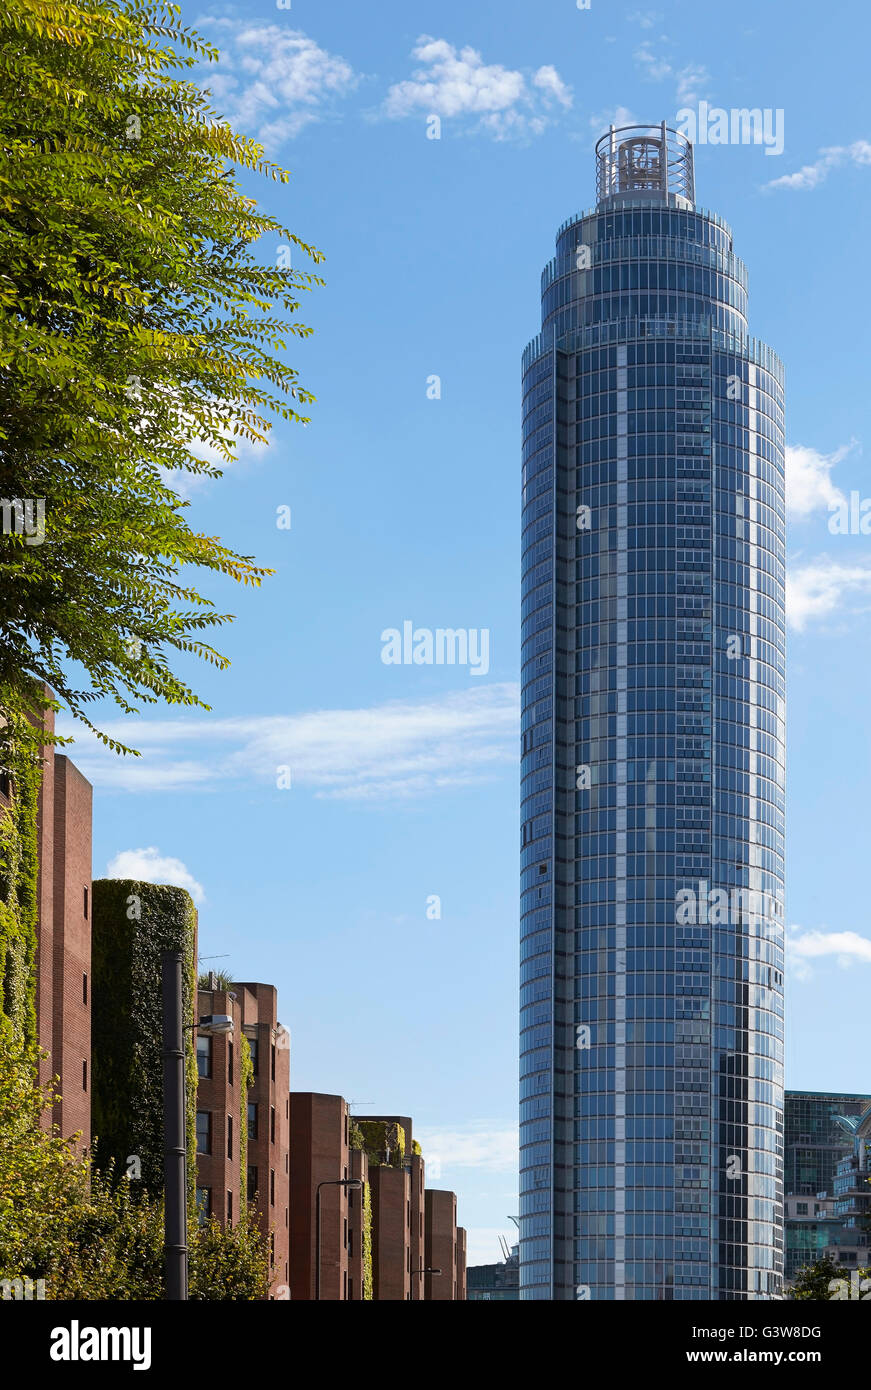 Hochhaus von unten zu Ziegel Fassade Terrasse gegenübergestellt. St George Wharf Tower, London, Vereinigtes Königreich. Architekt: Broadway Malyan Limited, 2014. Stockfoto